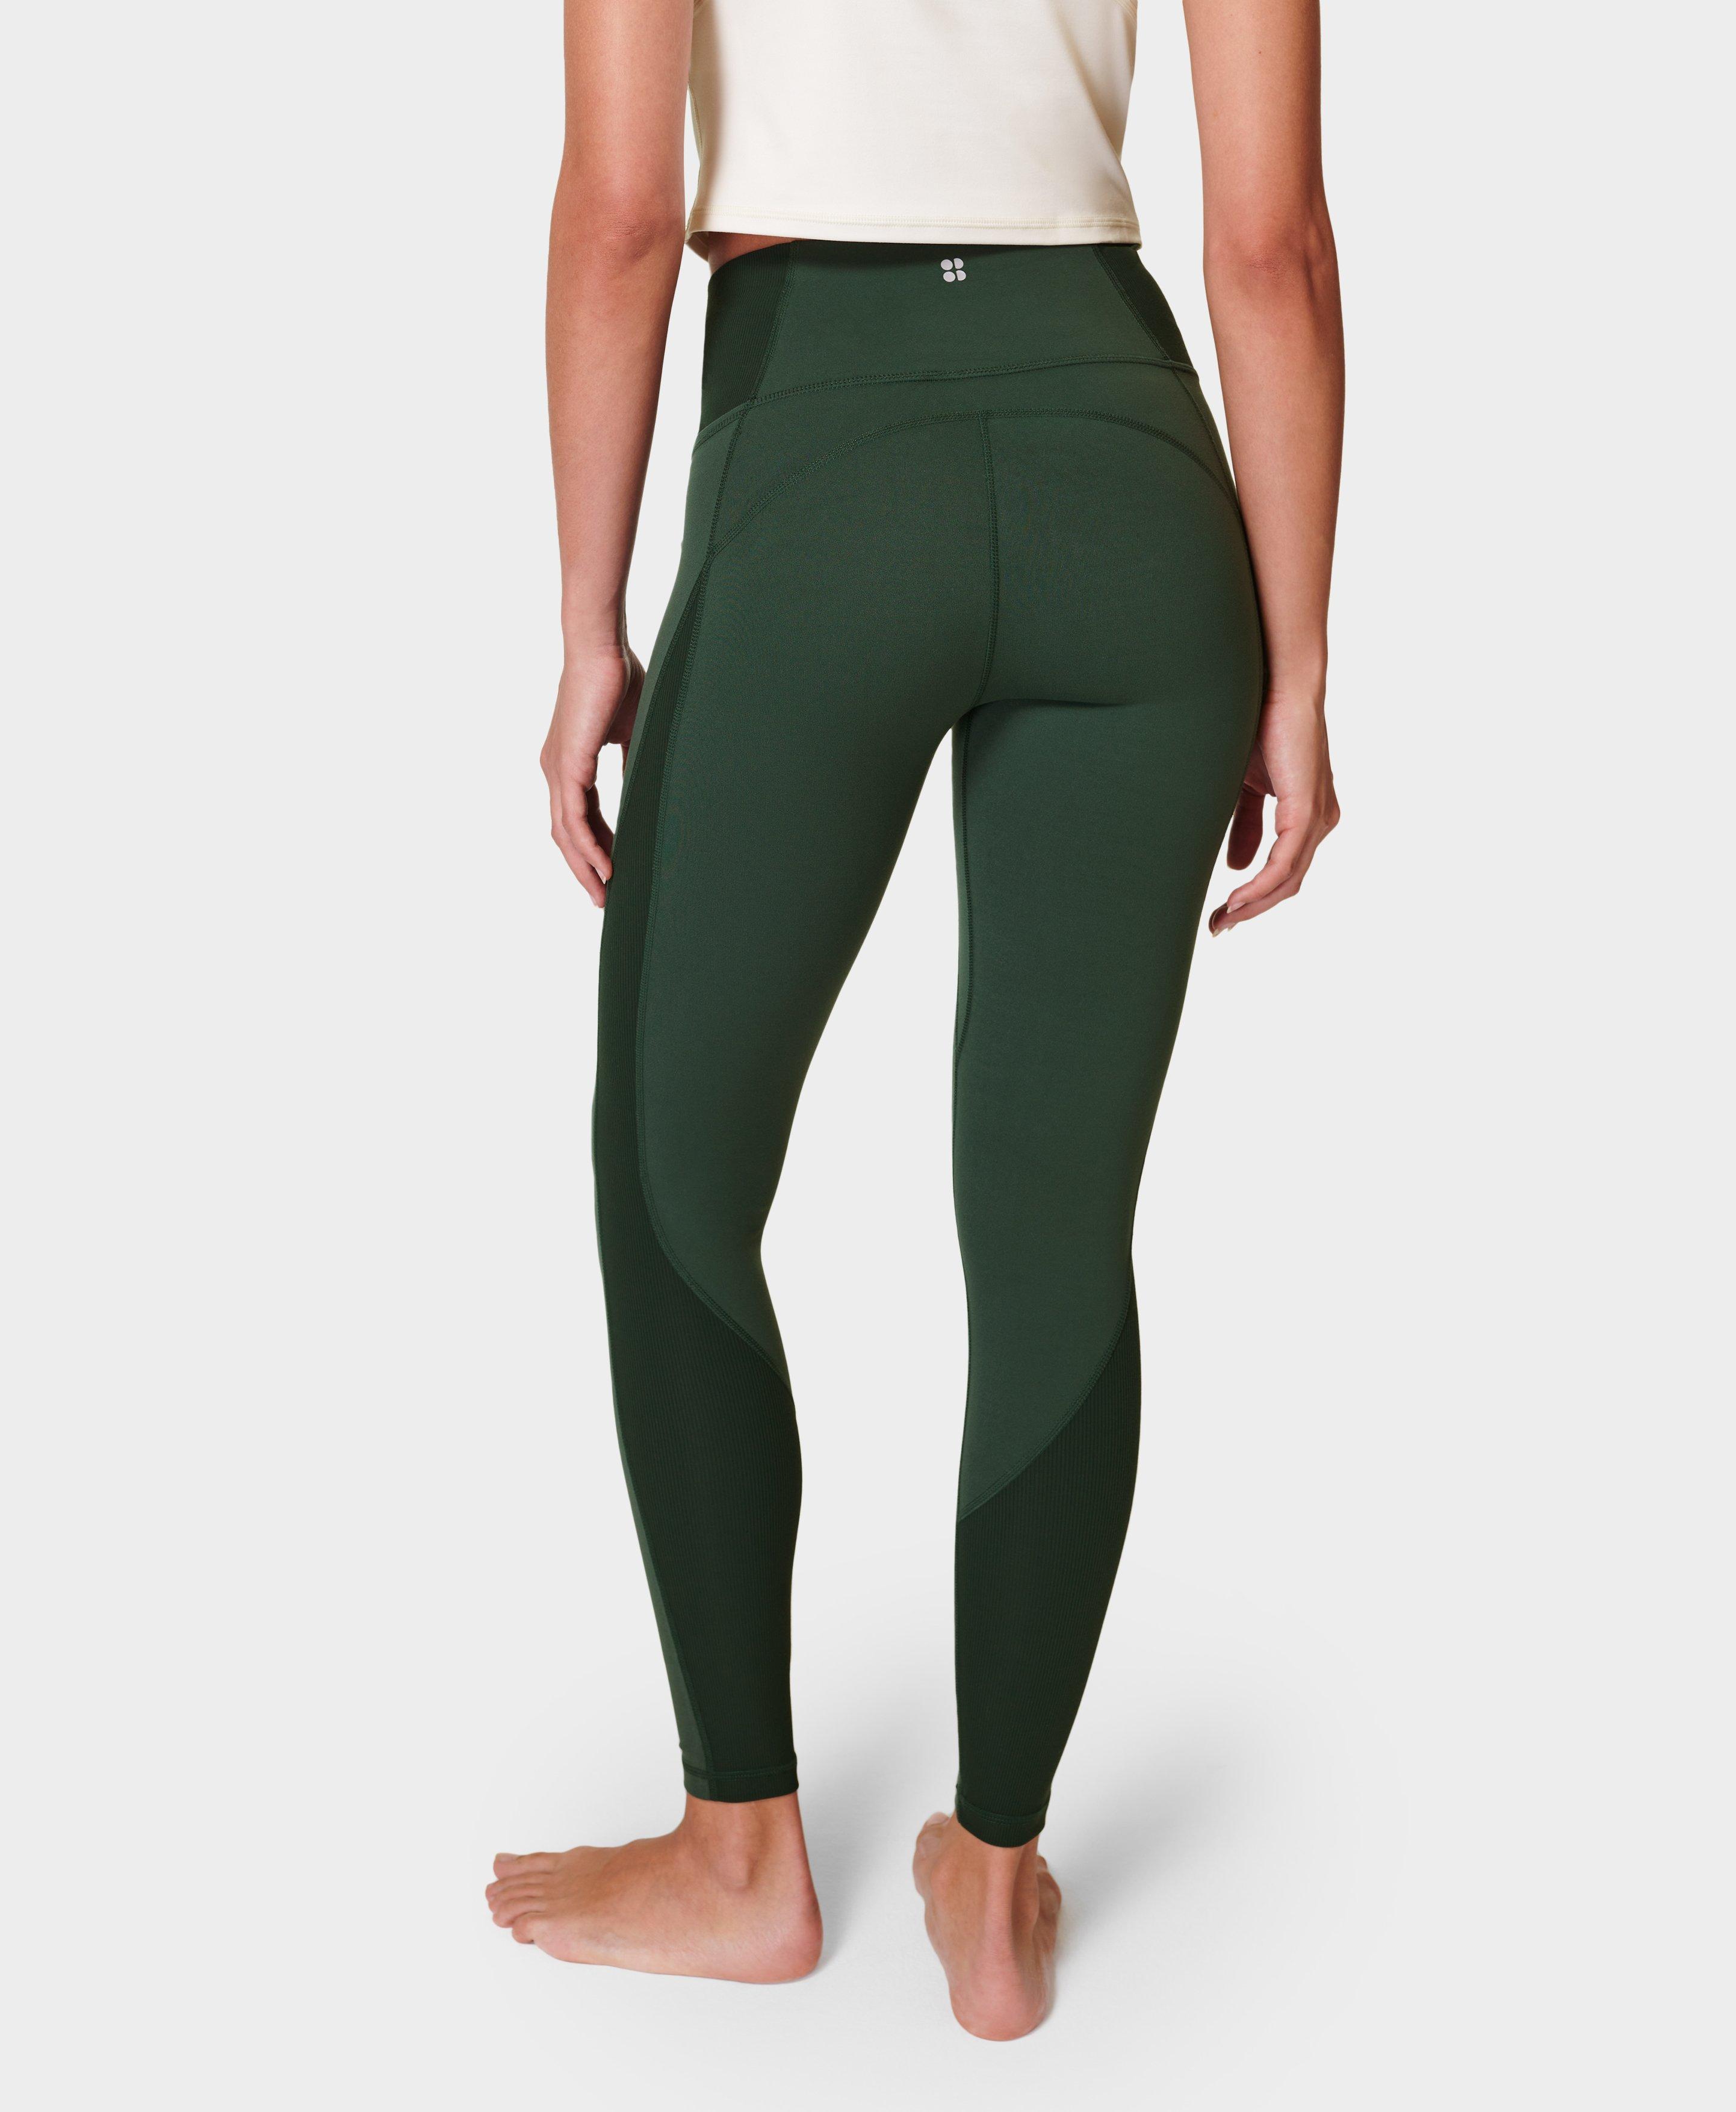 Super Soft Ribbed Yoga Leggings - Trek Green, Women's Leggings